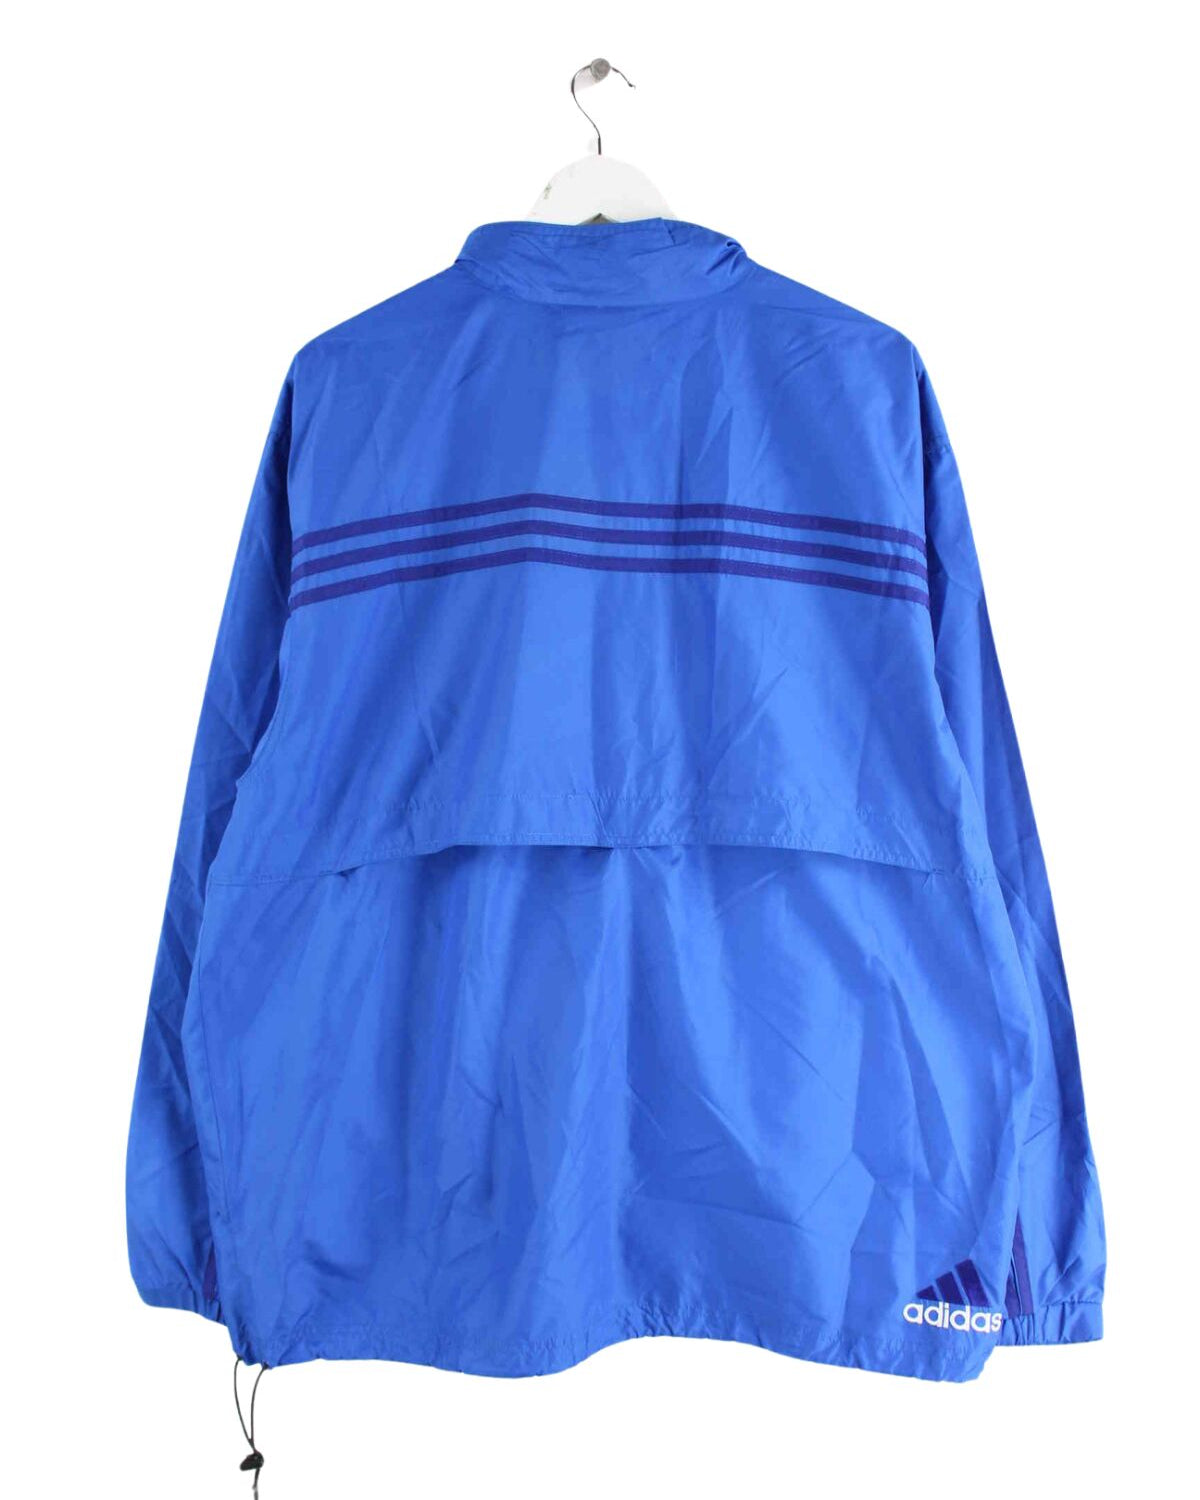 Adidas 90s Vintage Windbreaker Jacke Blau L (back image)